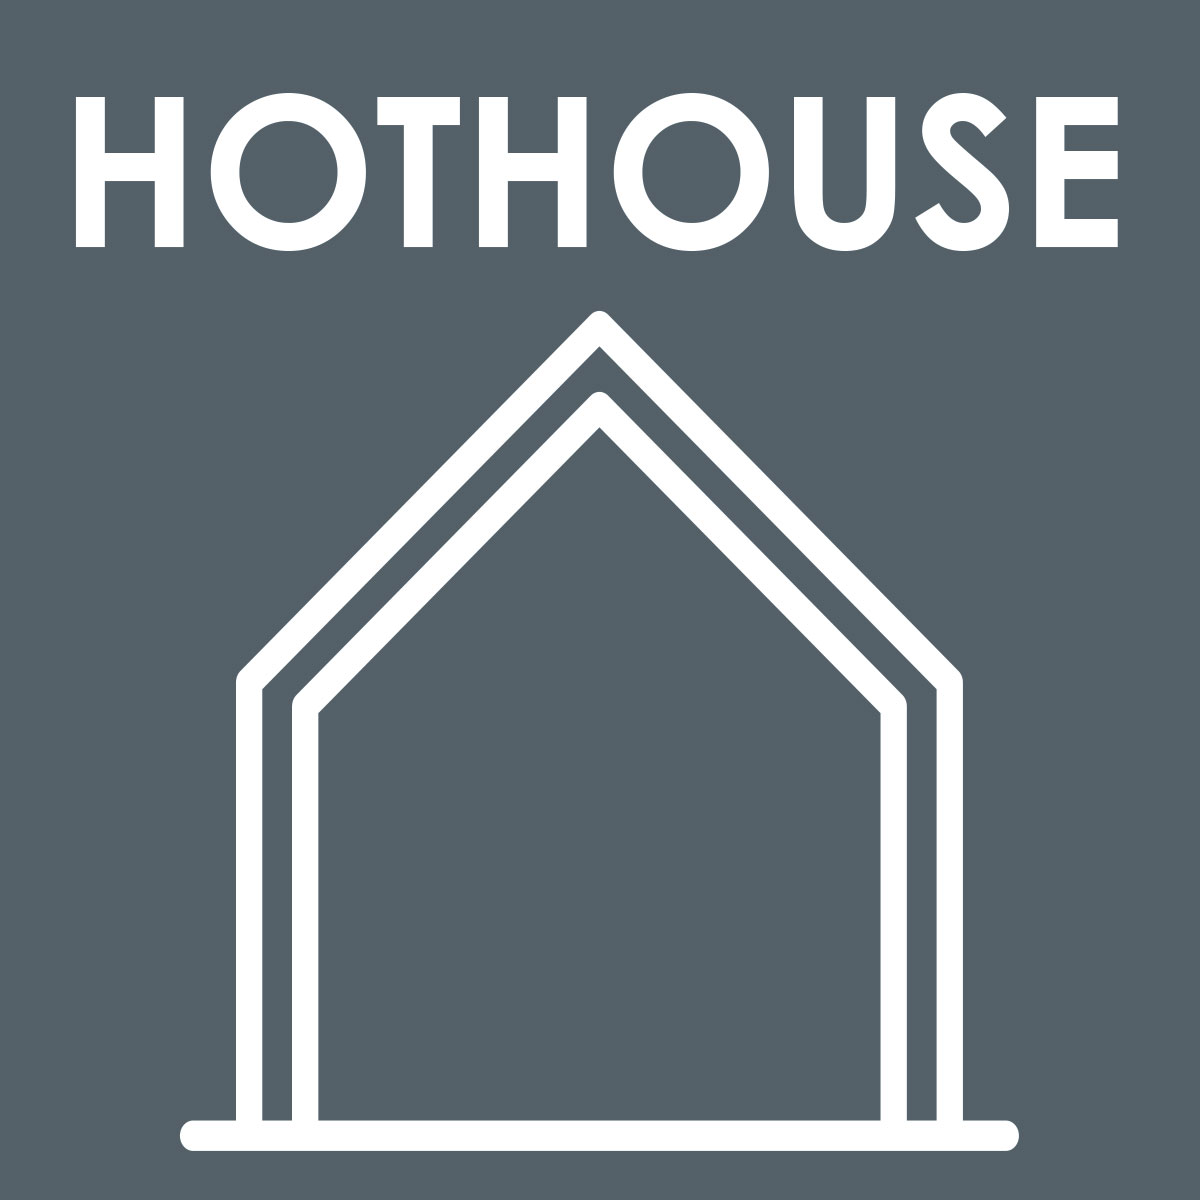 Hothouse Level Sponsorship